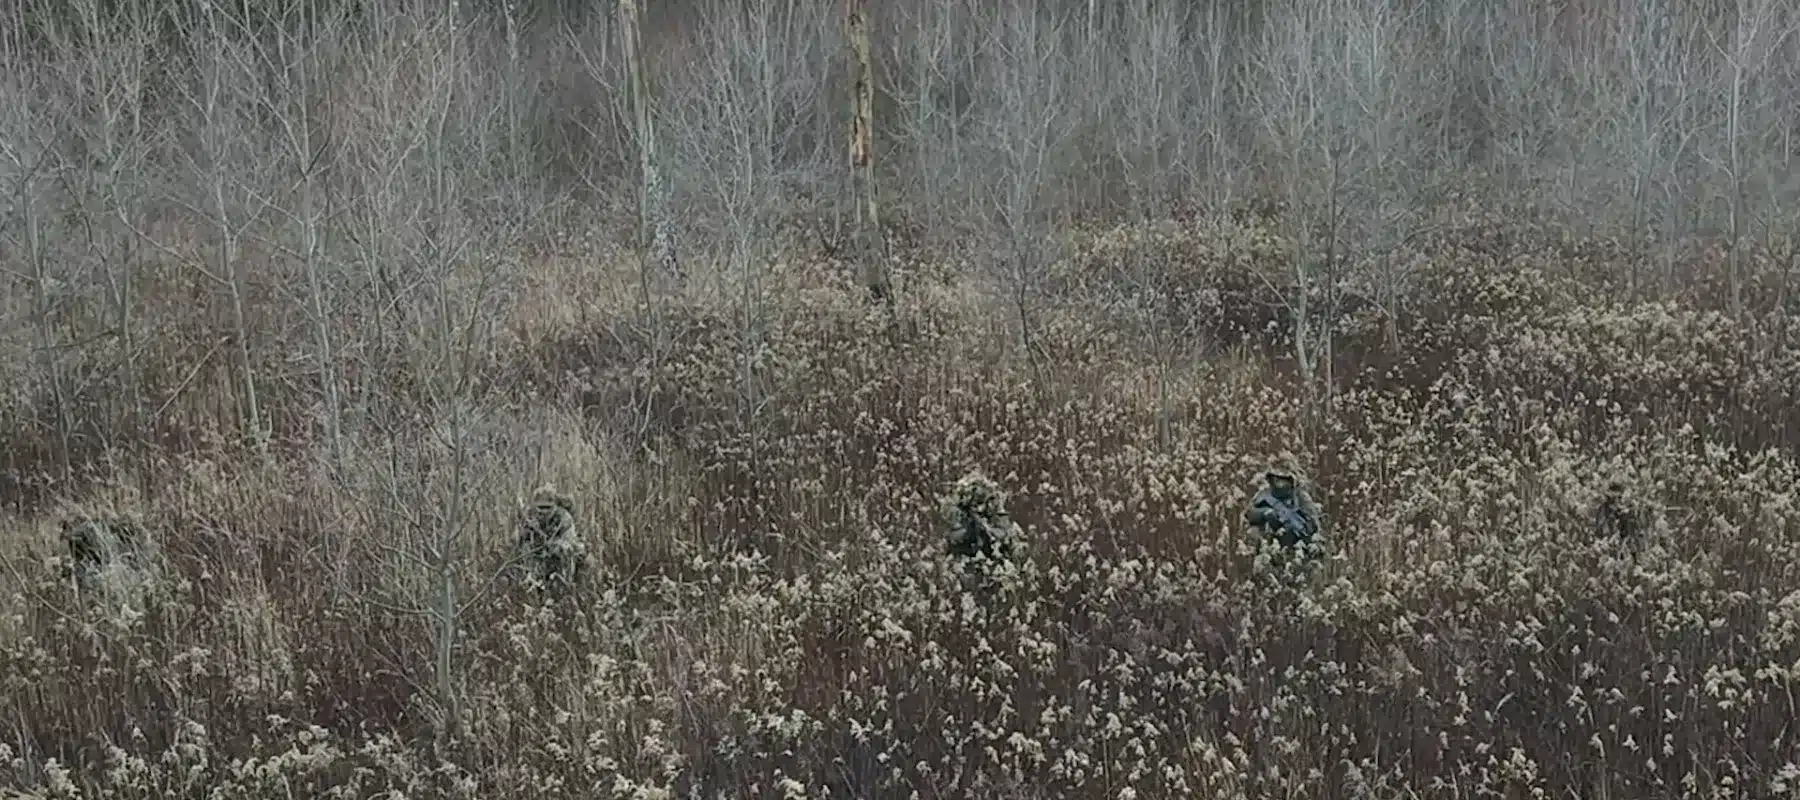 Grupa strzelcow z maskowaniem maszeruje w polu, szkolenie sere